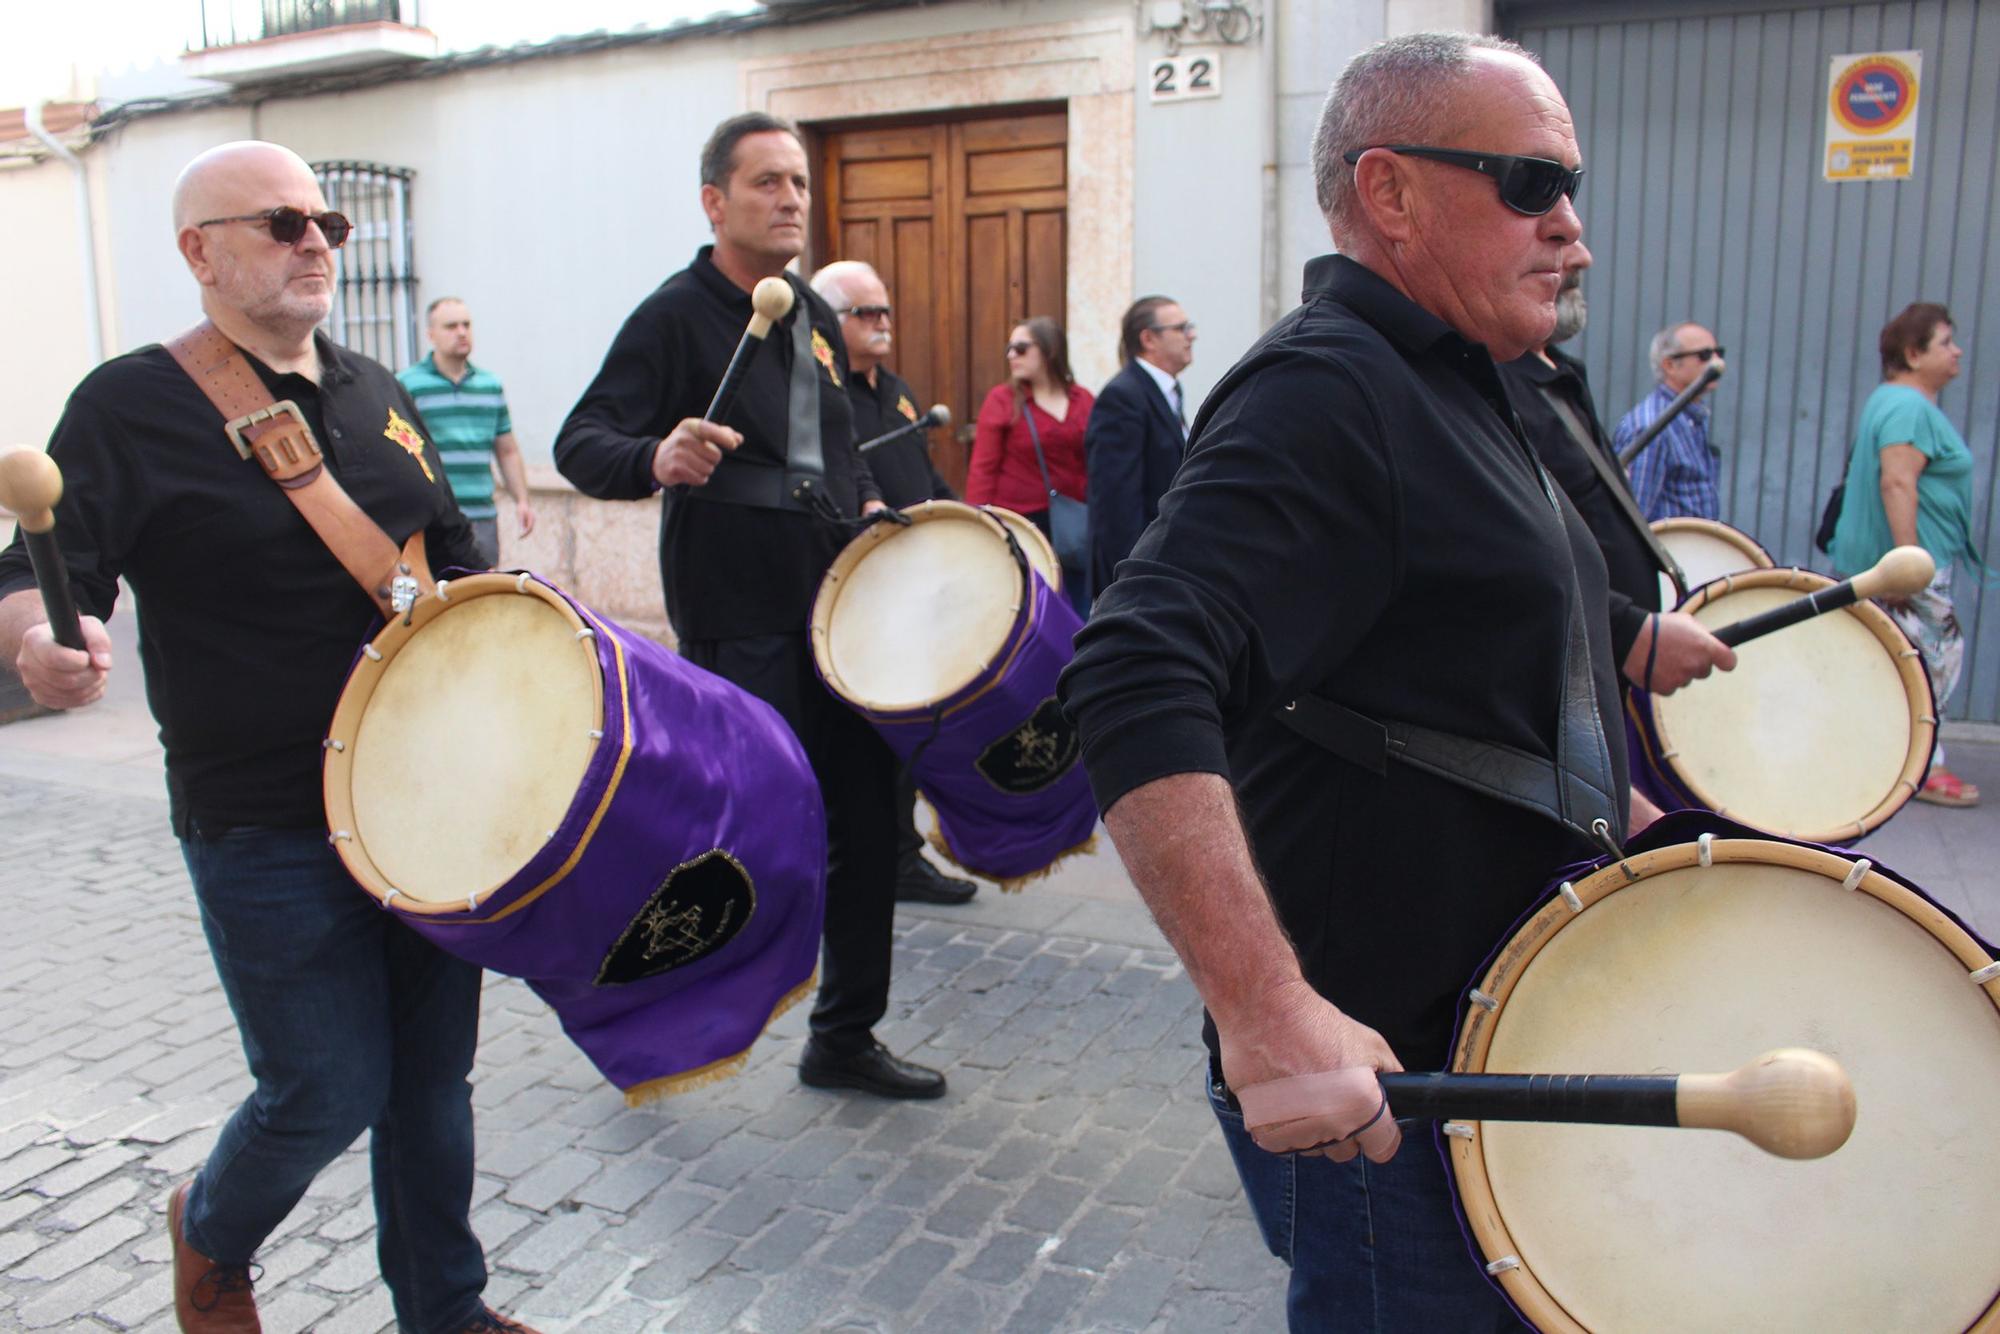 50 tambores de la zona sur de Córdoba protagonizan un desfile en Lucena